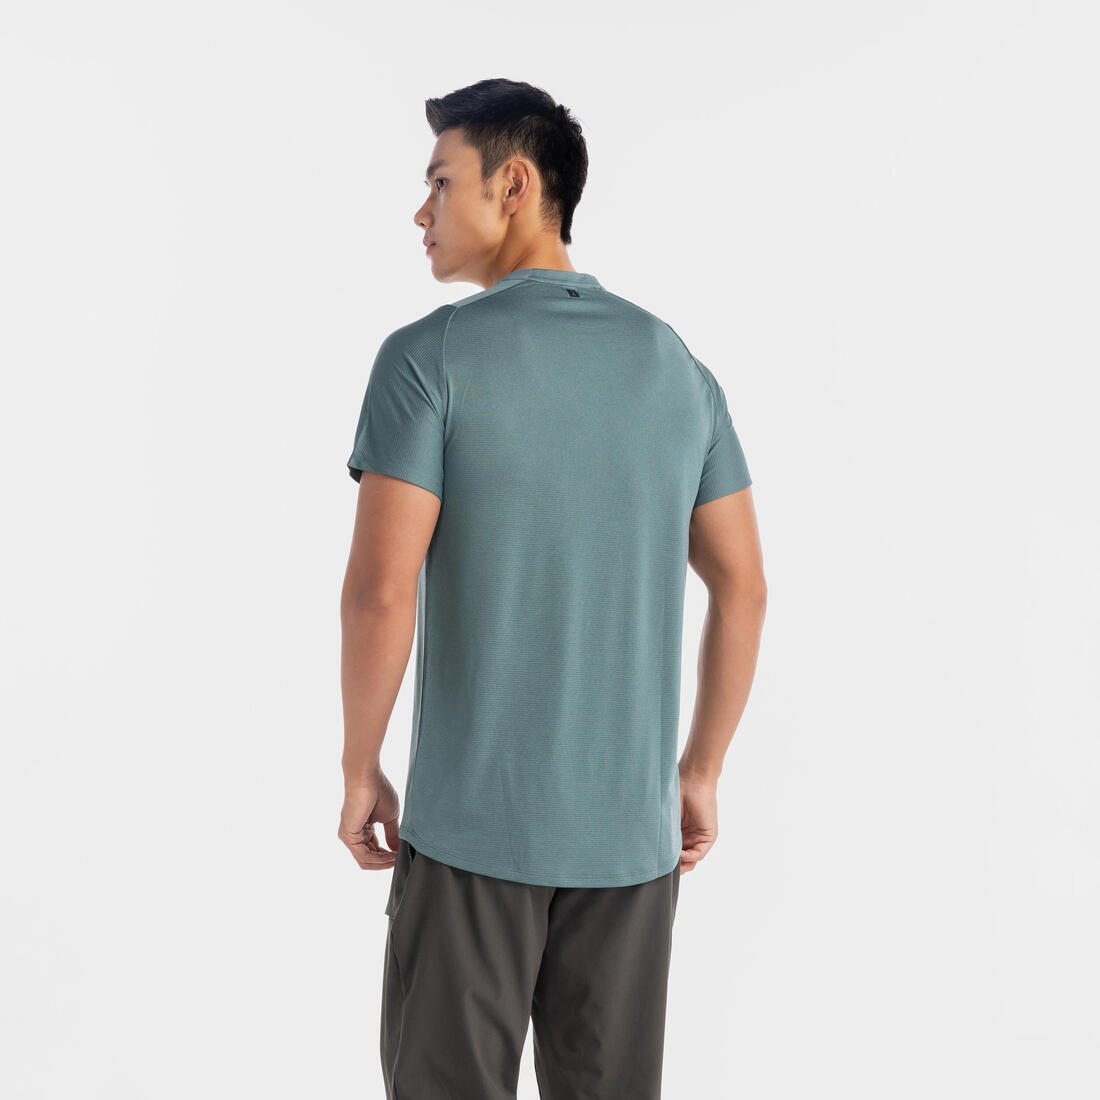 DOMYOS (ドミオス) フィットネス メンズ Tシャツ 透湿性 レギュラーフィット クルーネック 防臭 500